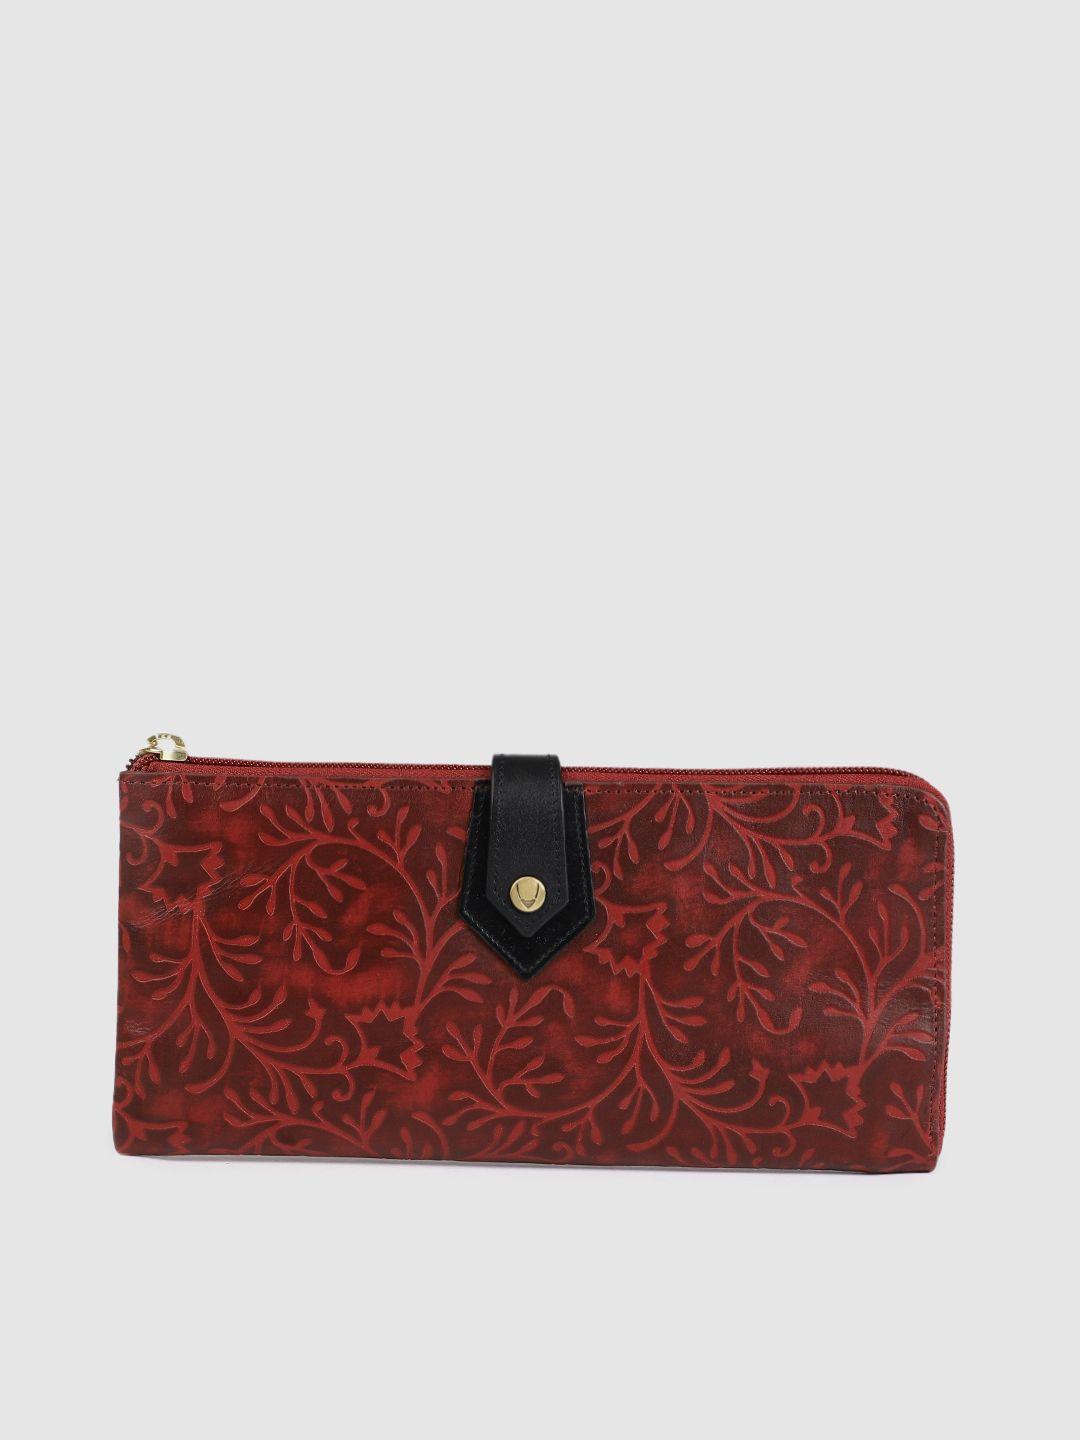 hidesign women red textured ee hong kong leather zip around wallet